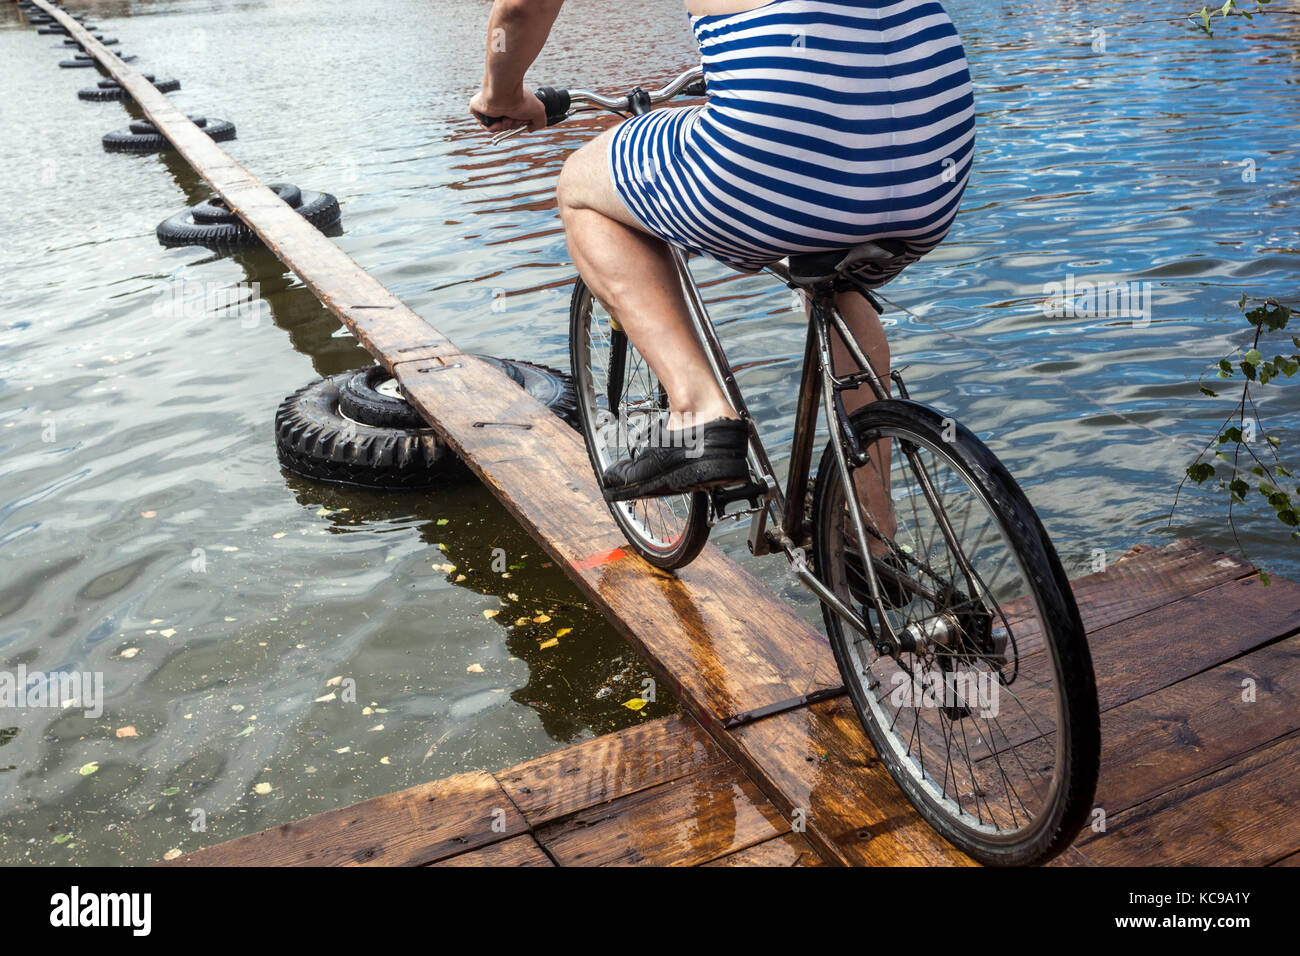 El festival checo, un ciclista en un puente peatonal de madera intenta cruzar el estanque, una inusual bicicleta deportiva Foto de stock